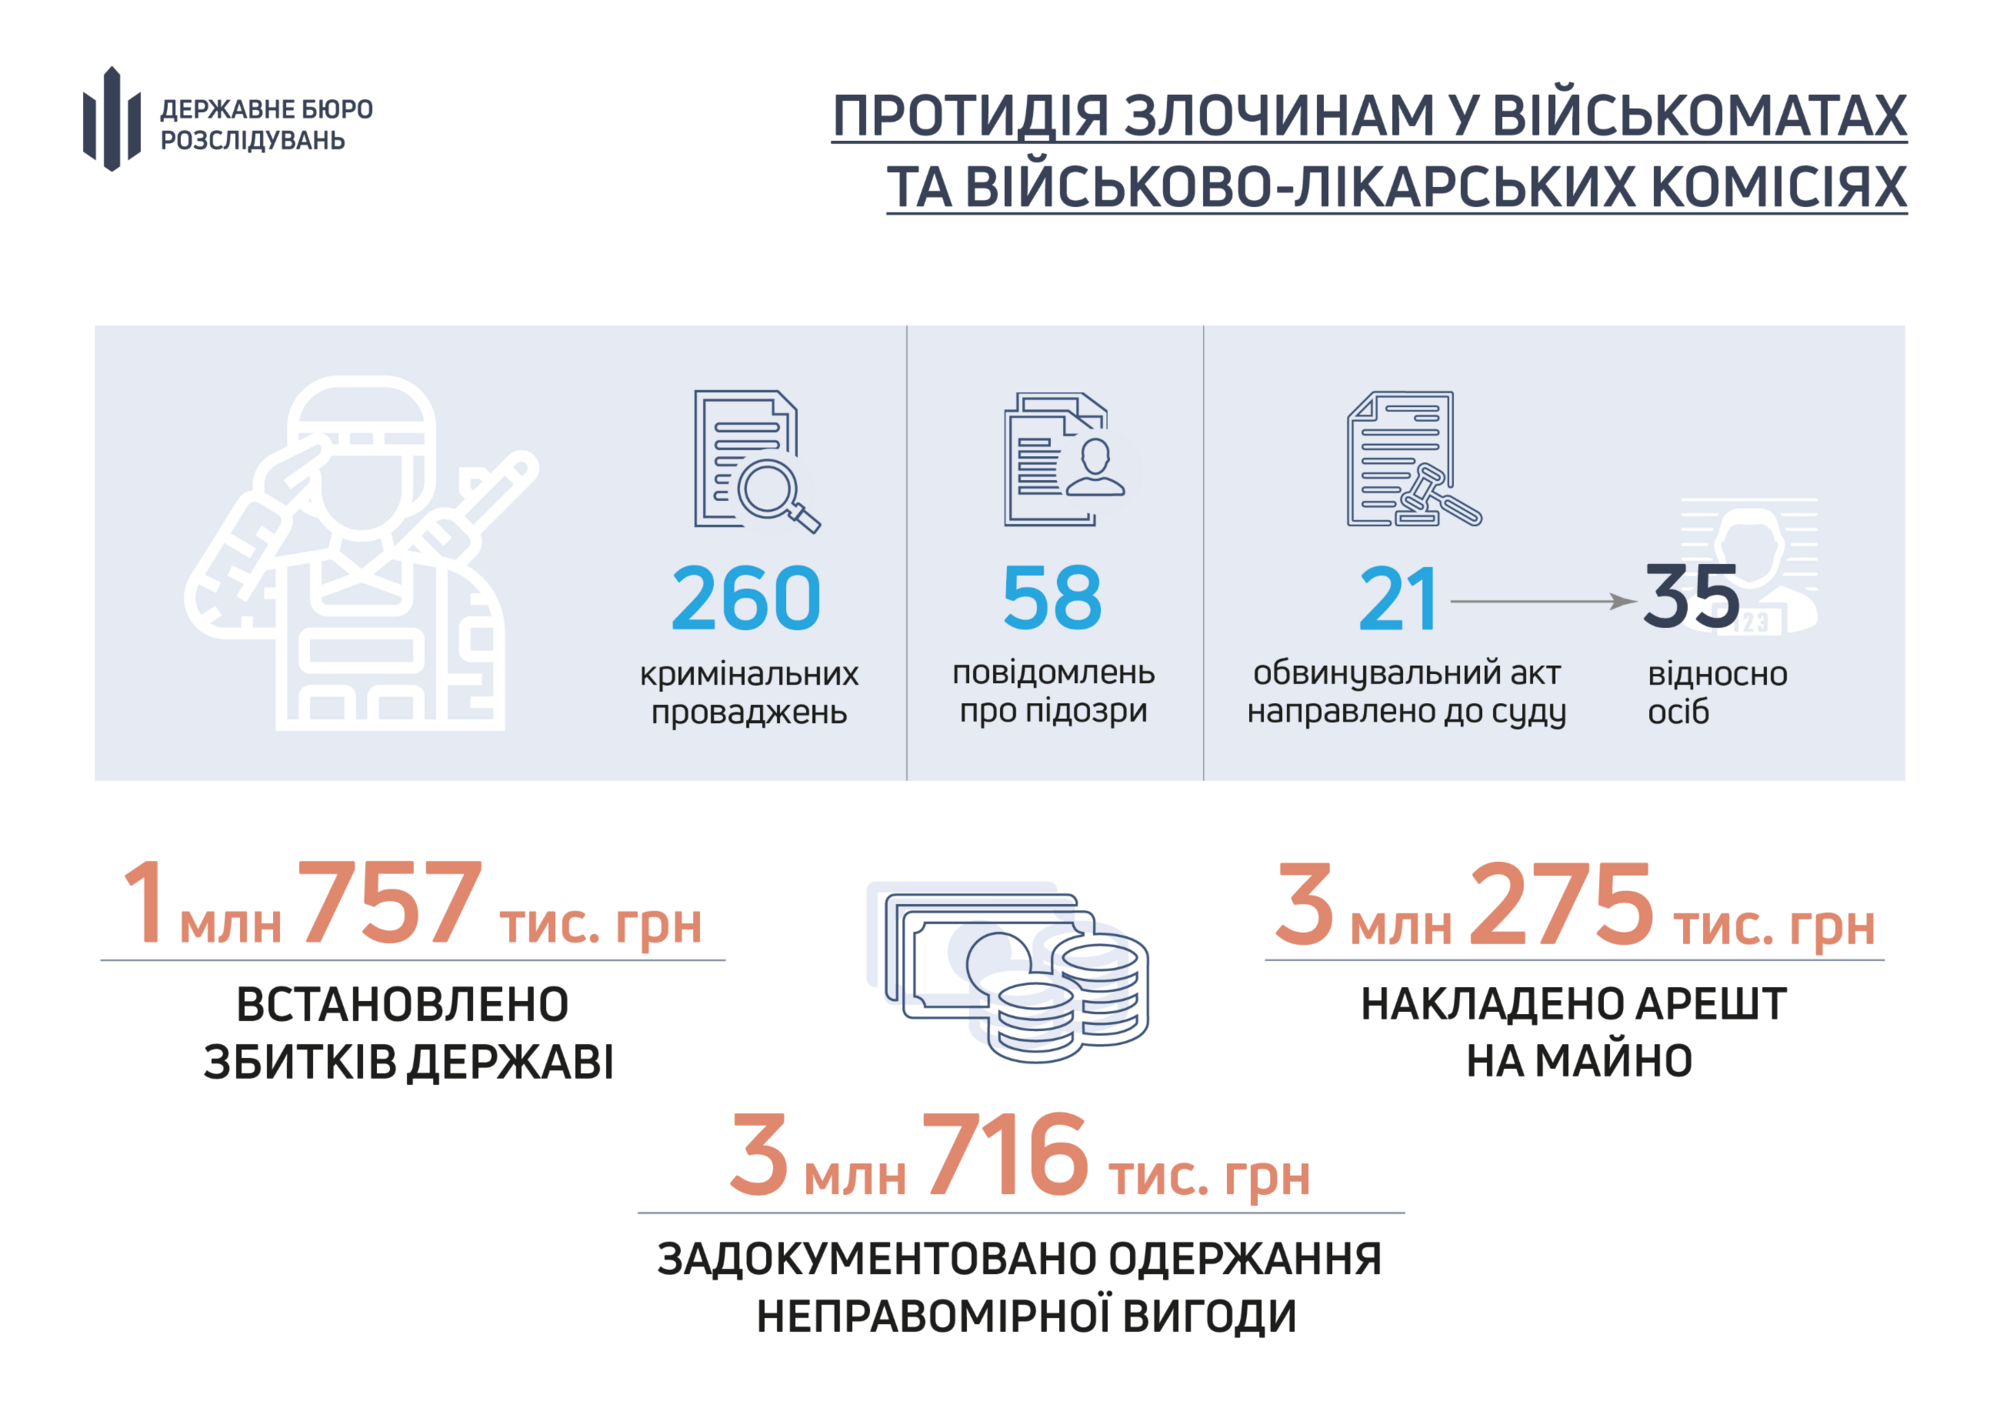 ГБР расследует 260 производств по фактам нарушений в военкоматах и ВВК: подробности